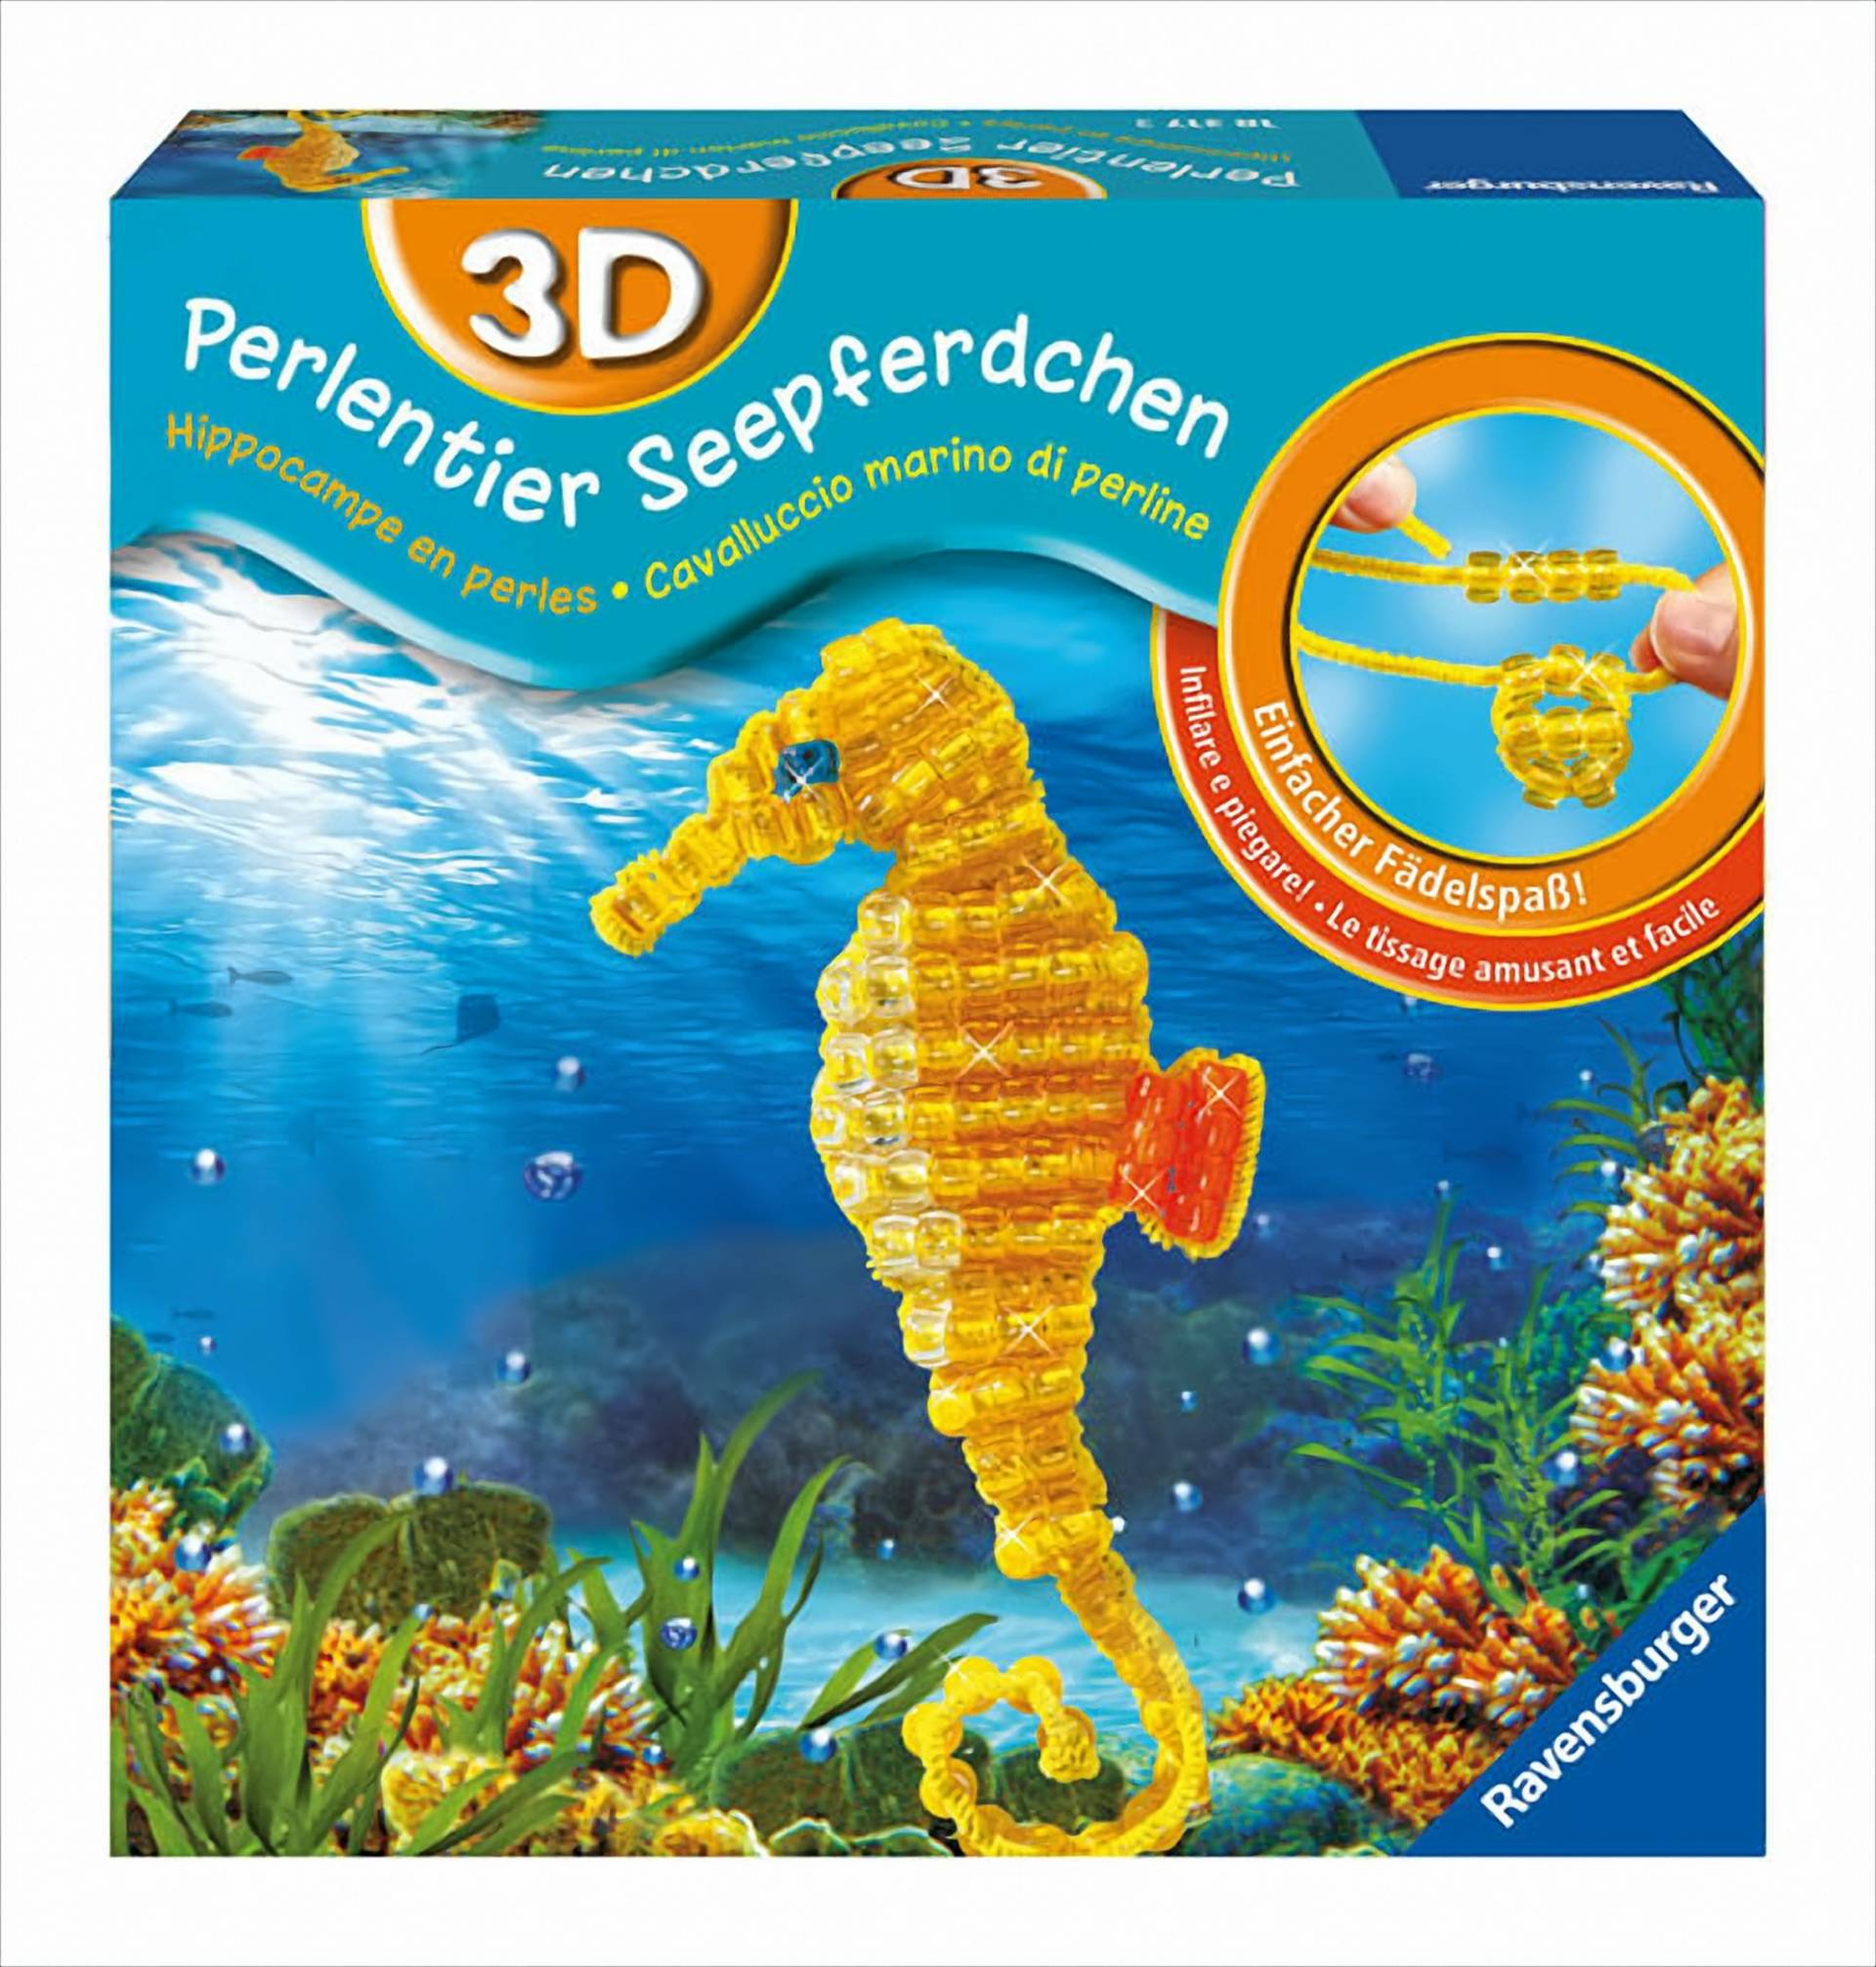 3D-Perlentier Seepferdchen von Ravensburger Spieleverlag